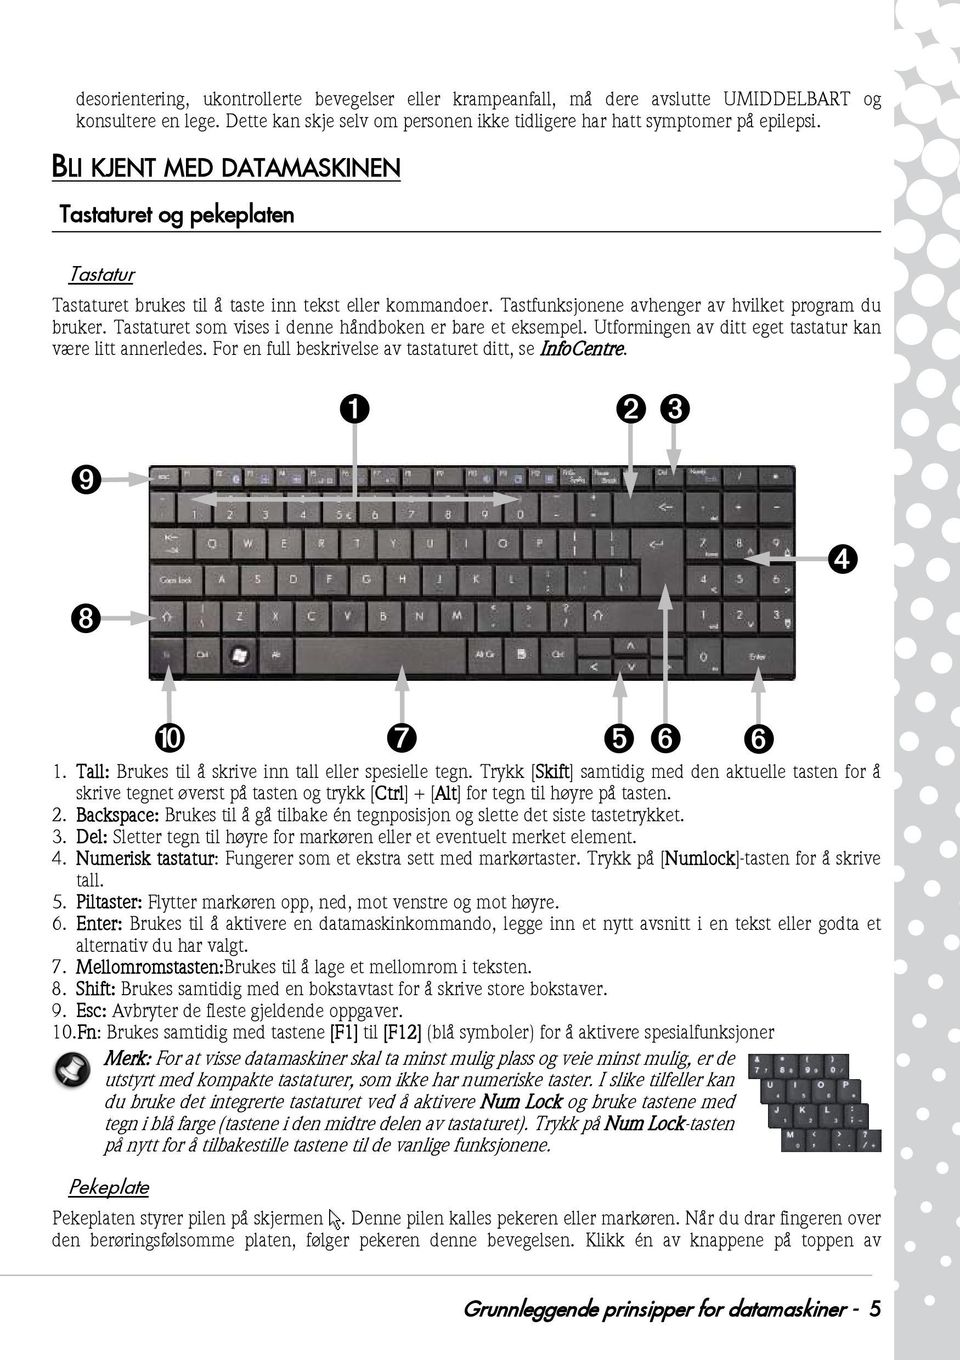 Tastaturet som vises i denne håndboken er bare et eksempel. Utformingen av ditt eget tastatur kan være litt annerledes. For en full beskrivelse av tastaturet ditt, se InfoCentre.